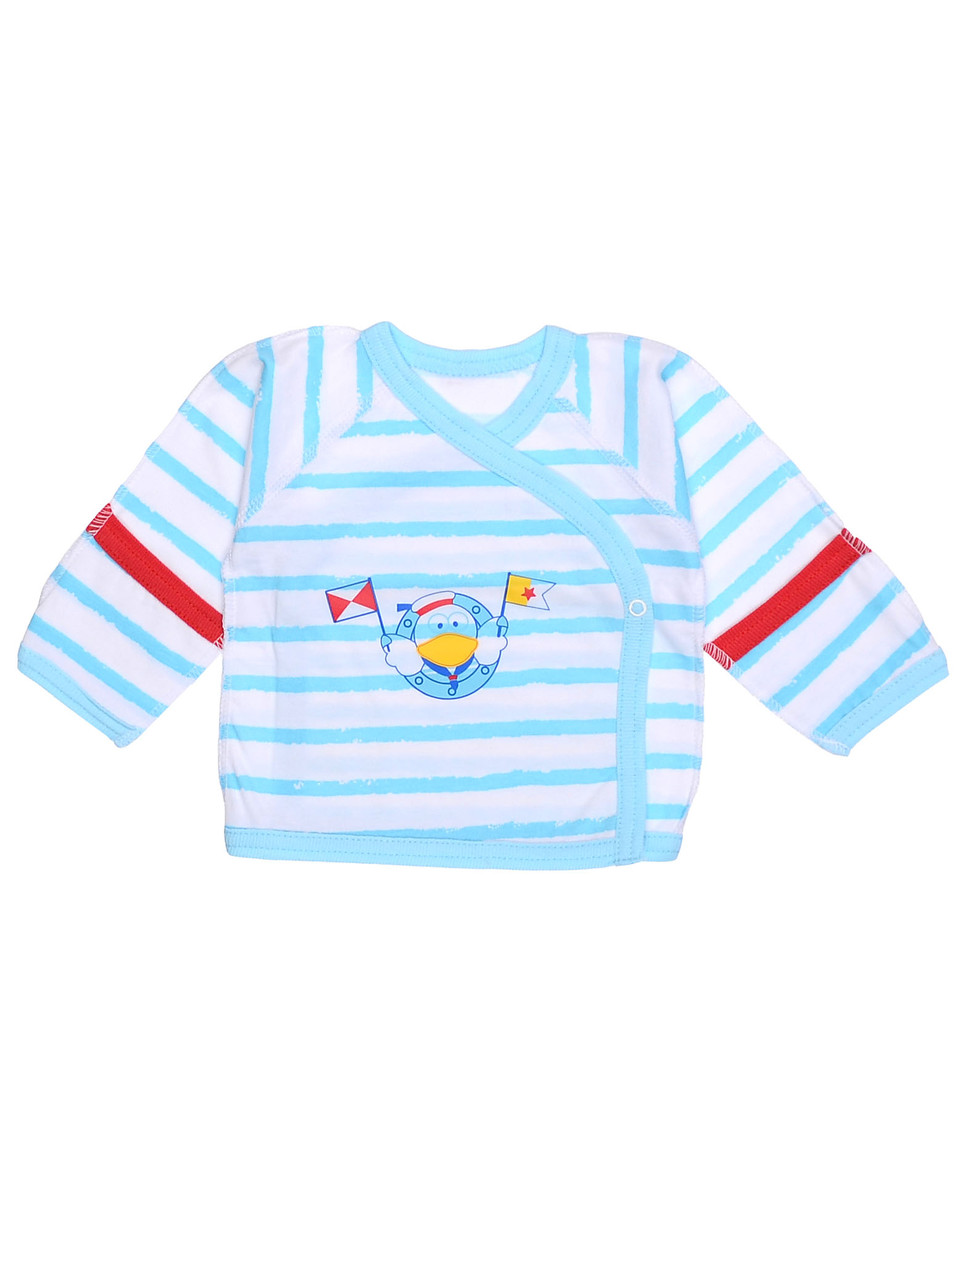 Дитяча сорочечка для новонароджених Морячок